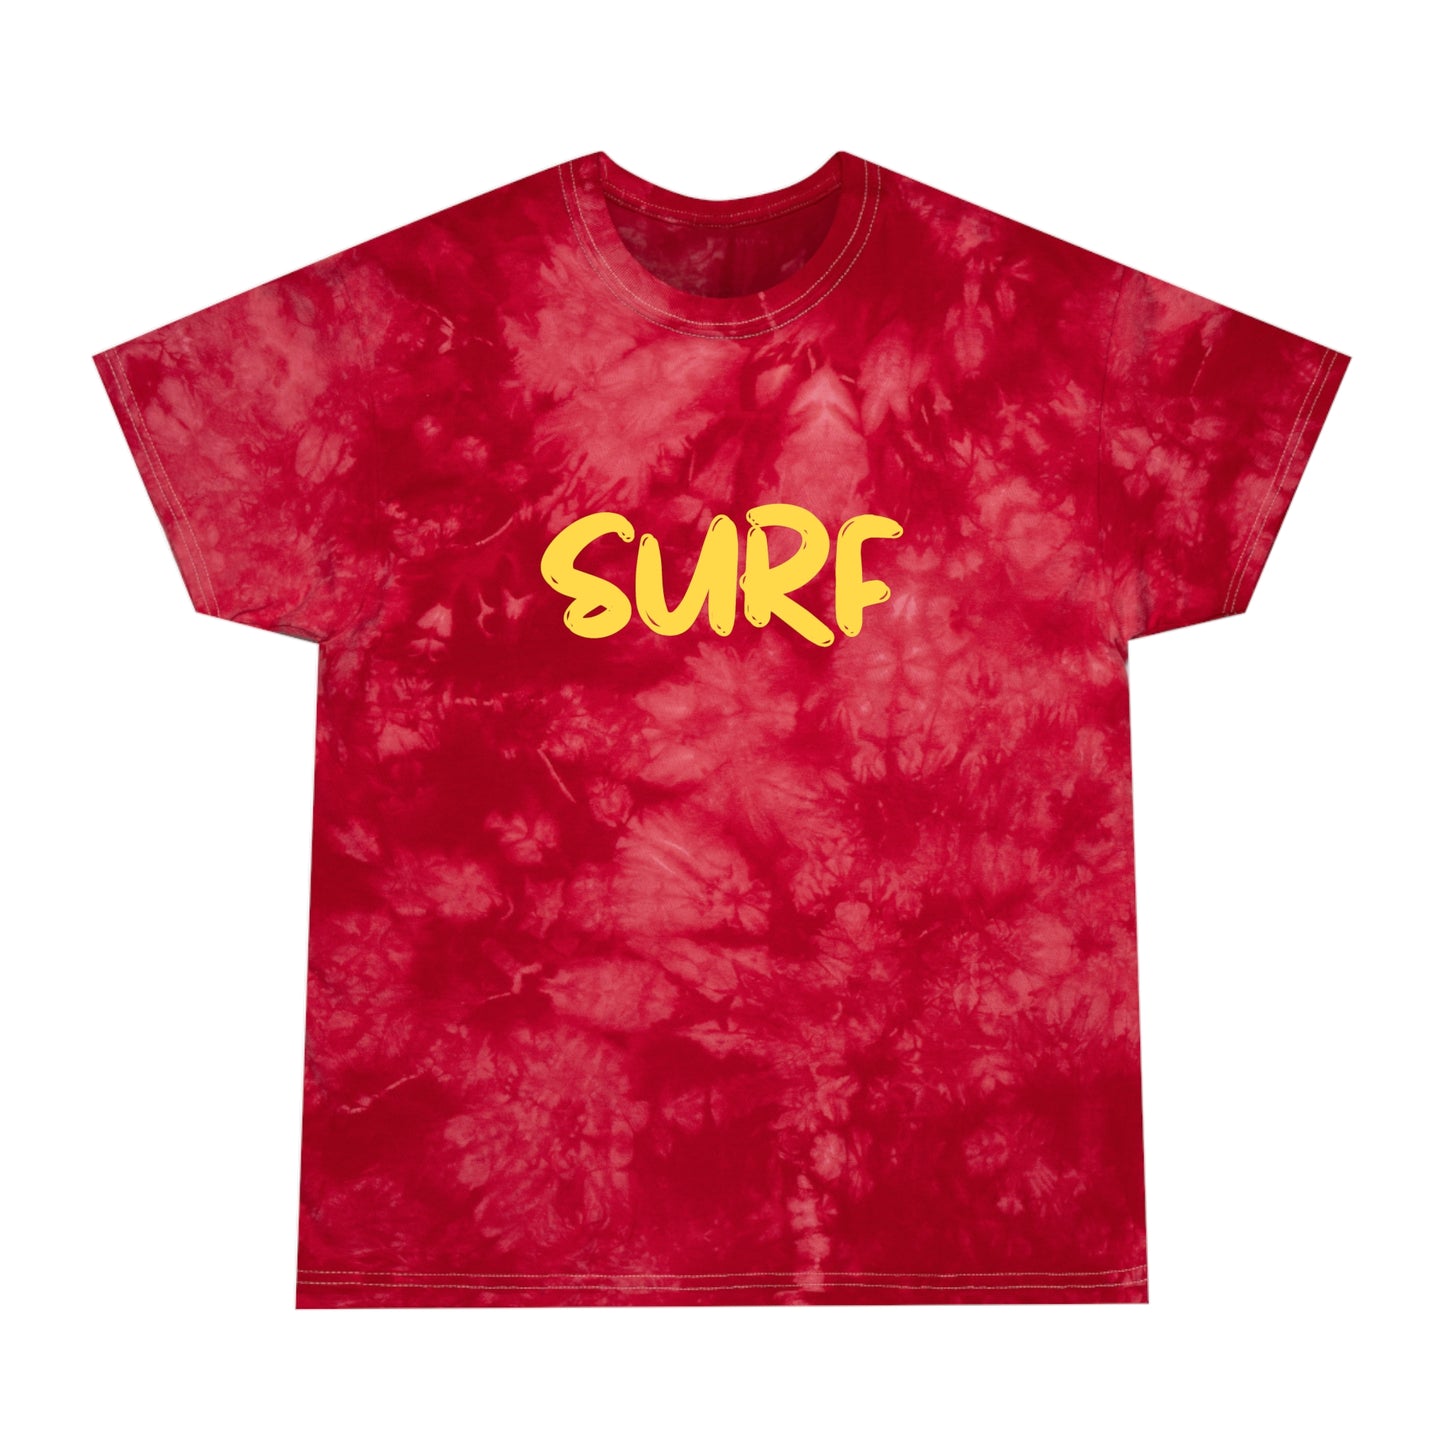 SURF Tie-Dye Tee, Crystal, Gold Script